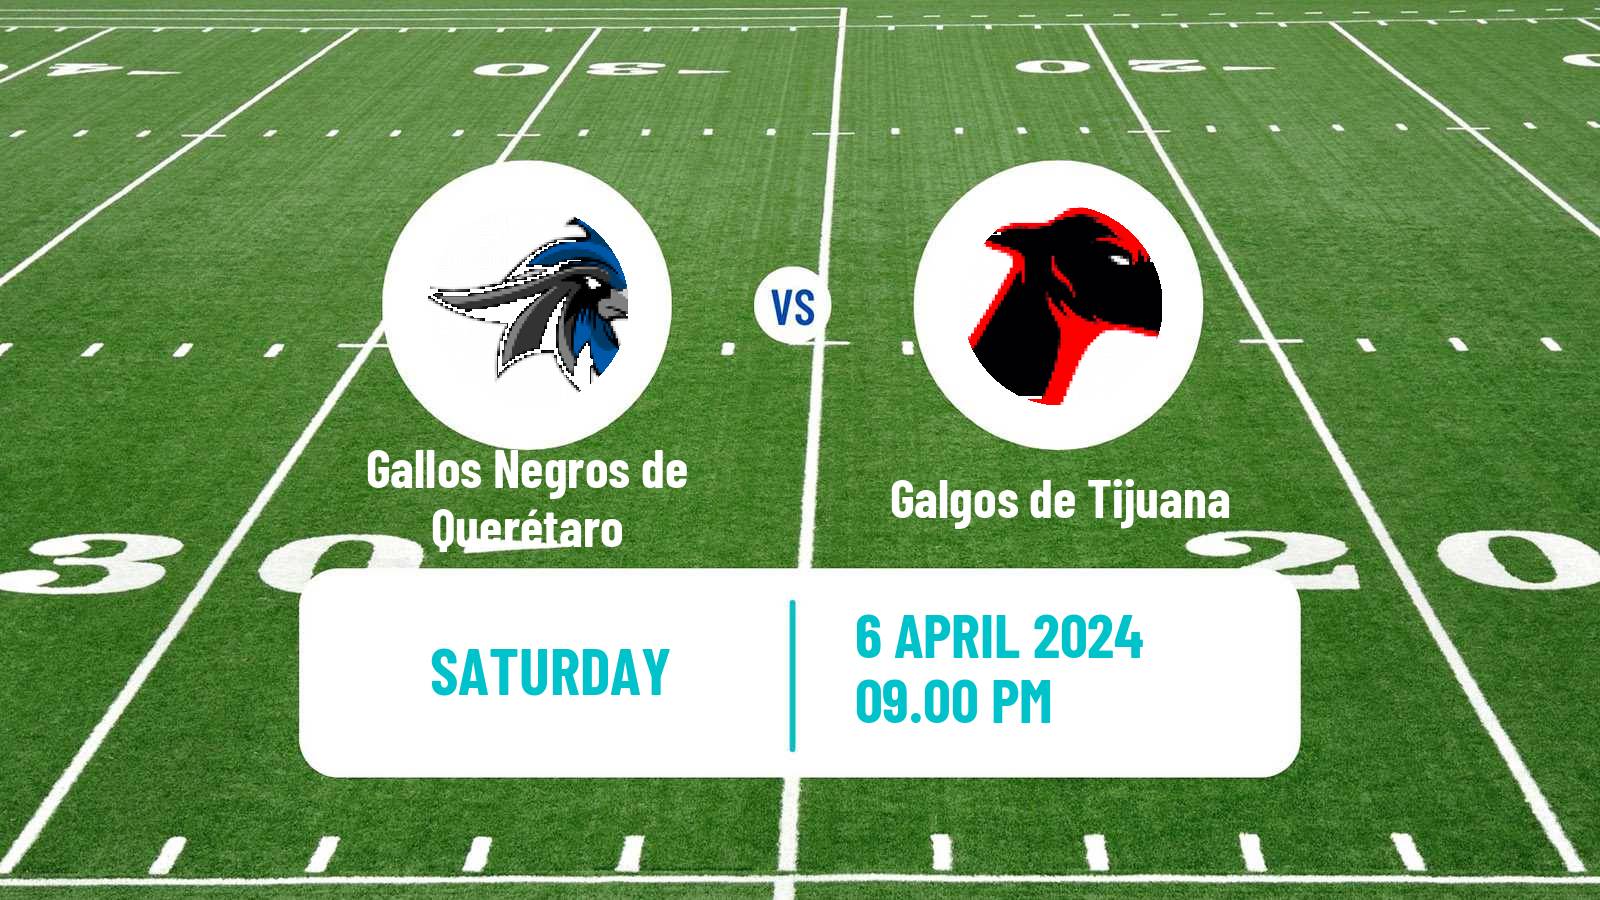 American football Mexican LFA Gallos Negros de Querétaro - Galgos de Tijuana